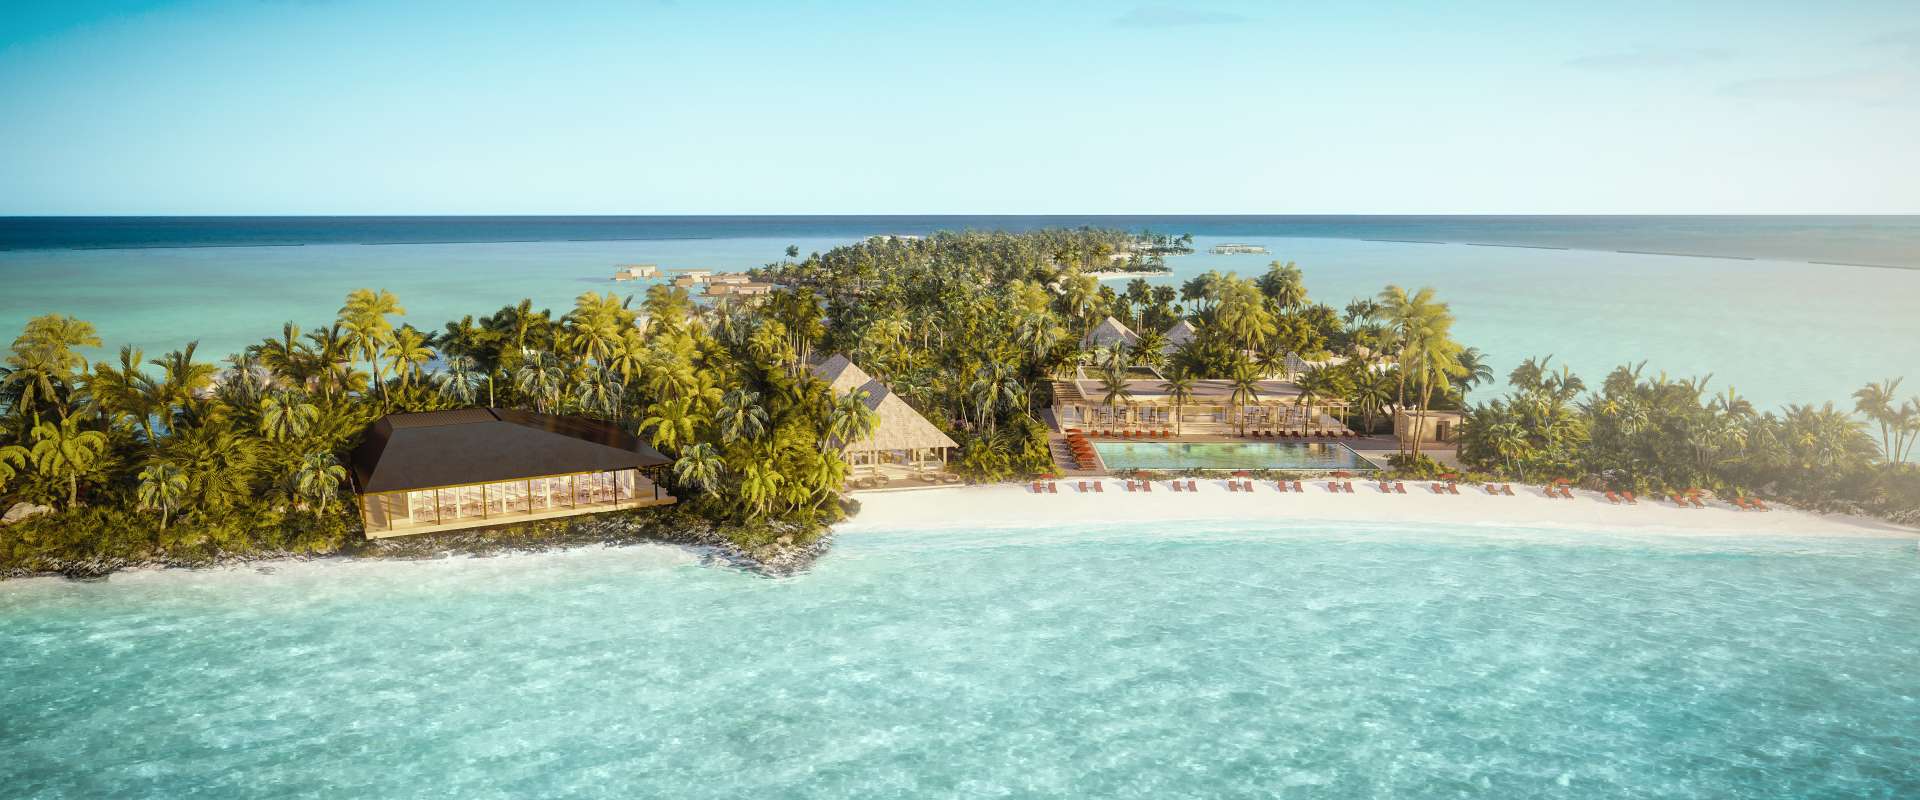 Bulgari maldives resort open